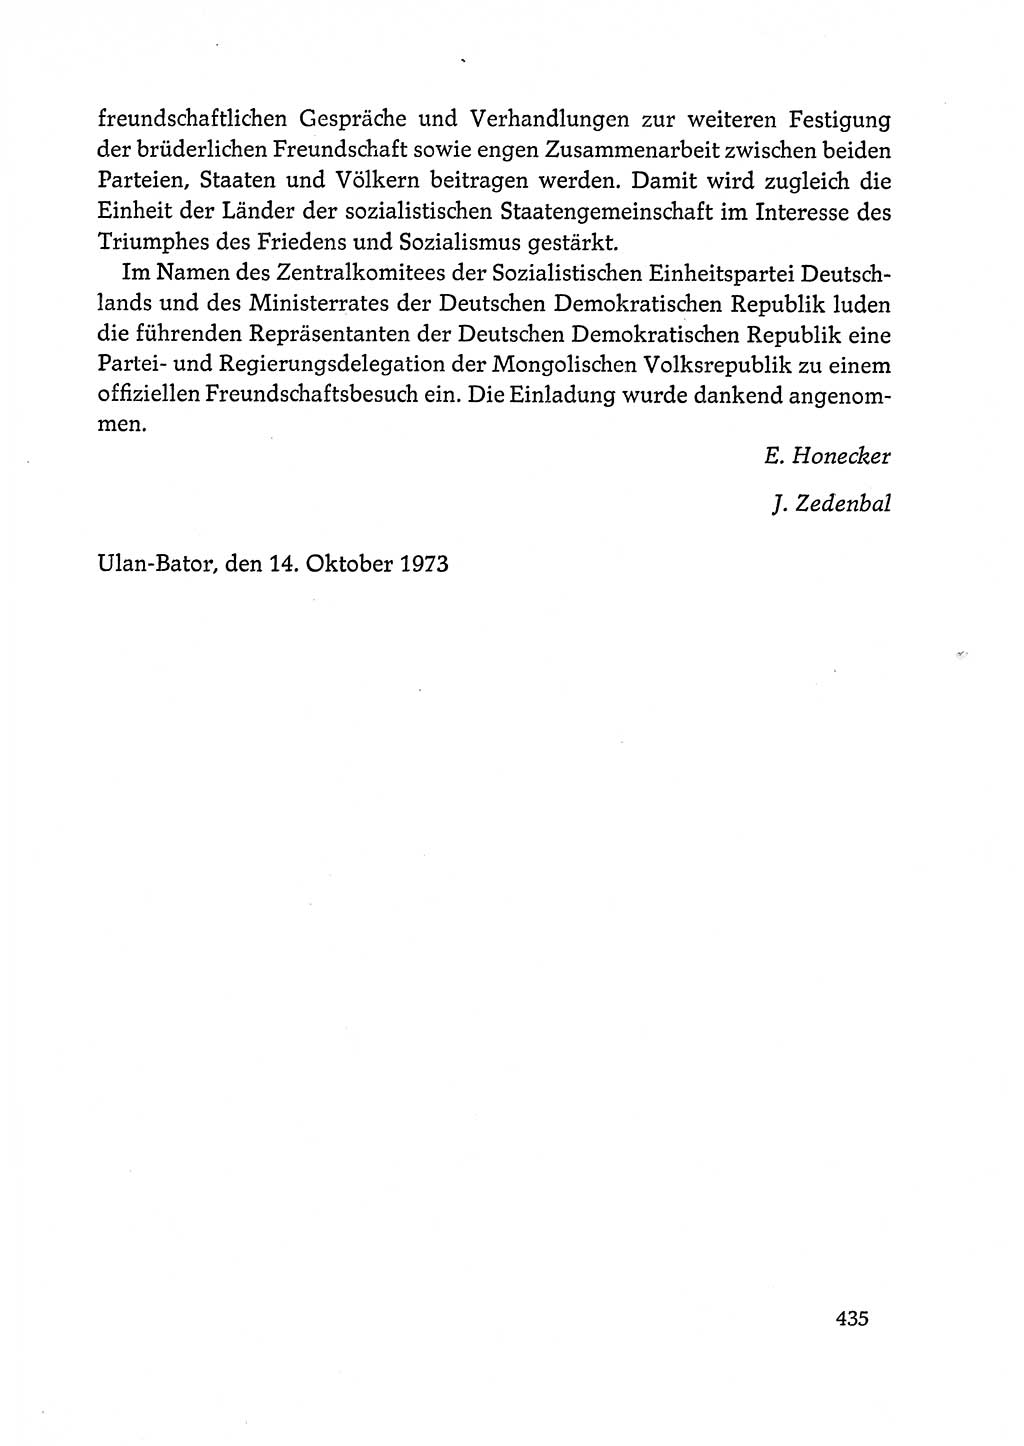 Dokumente der Sozialistischen Einheitspartei Deutschlands (SED) [Deutsche Demokratische Republik (DDR)] 1972-1973, Seite 435 (Dok. SED DDR 1972-1973, S. 435)